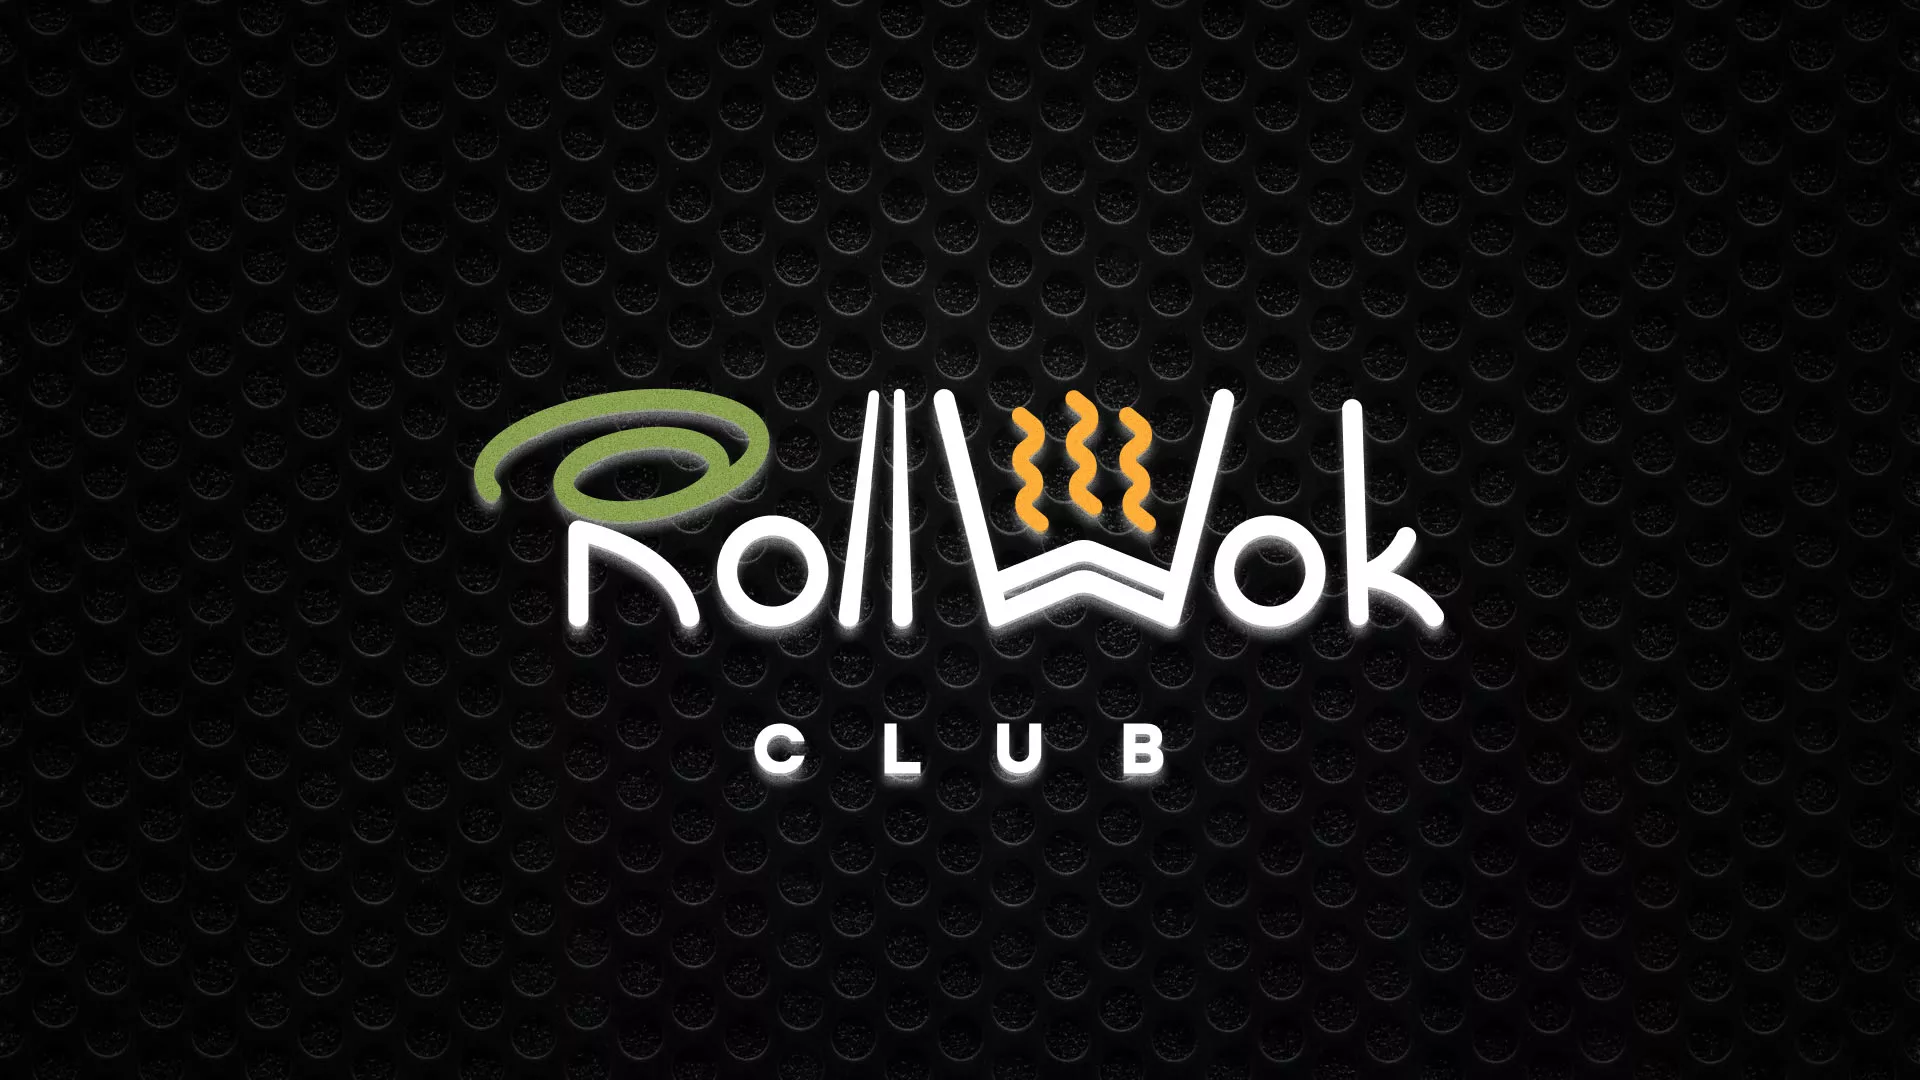 Брендирование торговых точек суши-бара «Roll Wok Club» в Стародубе